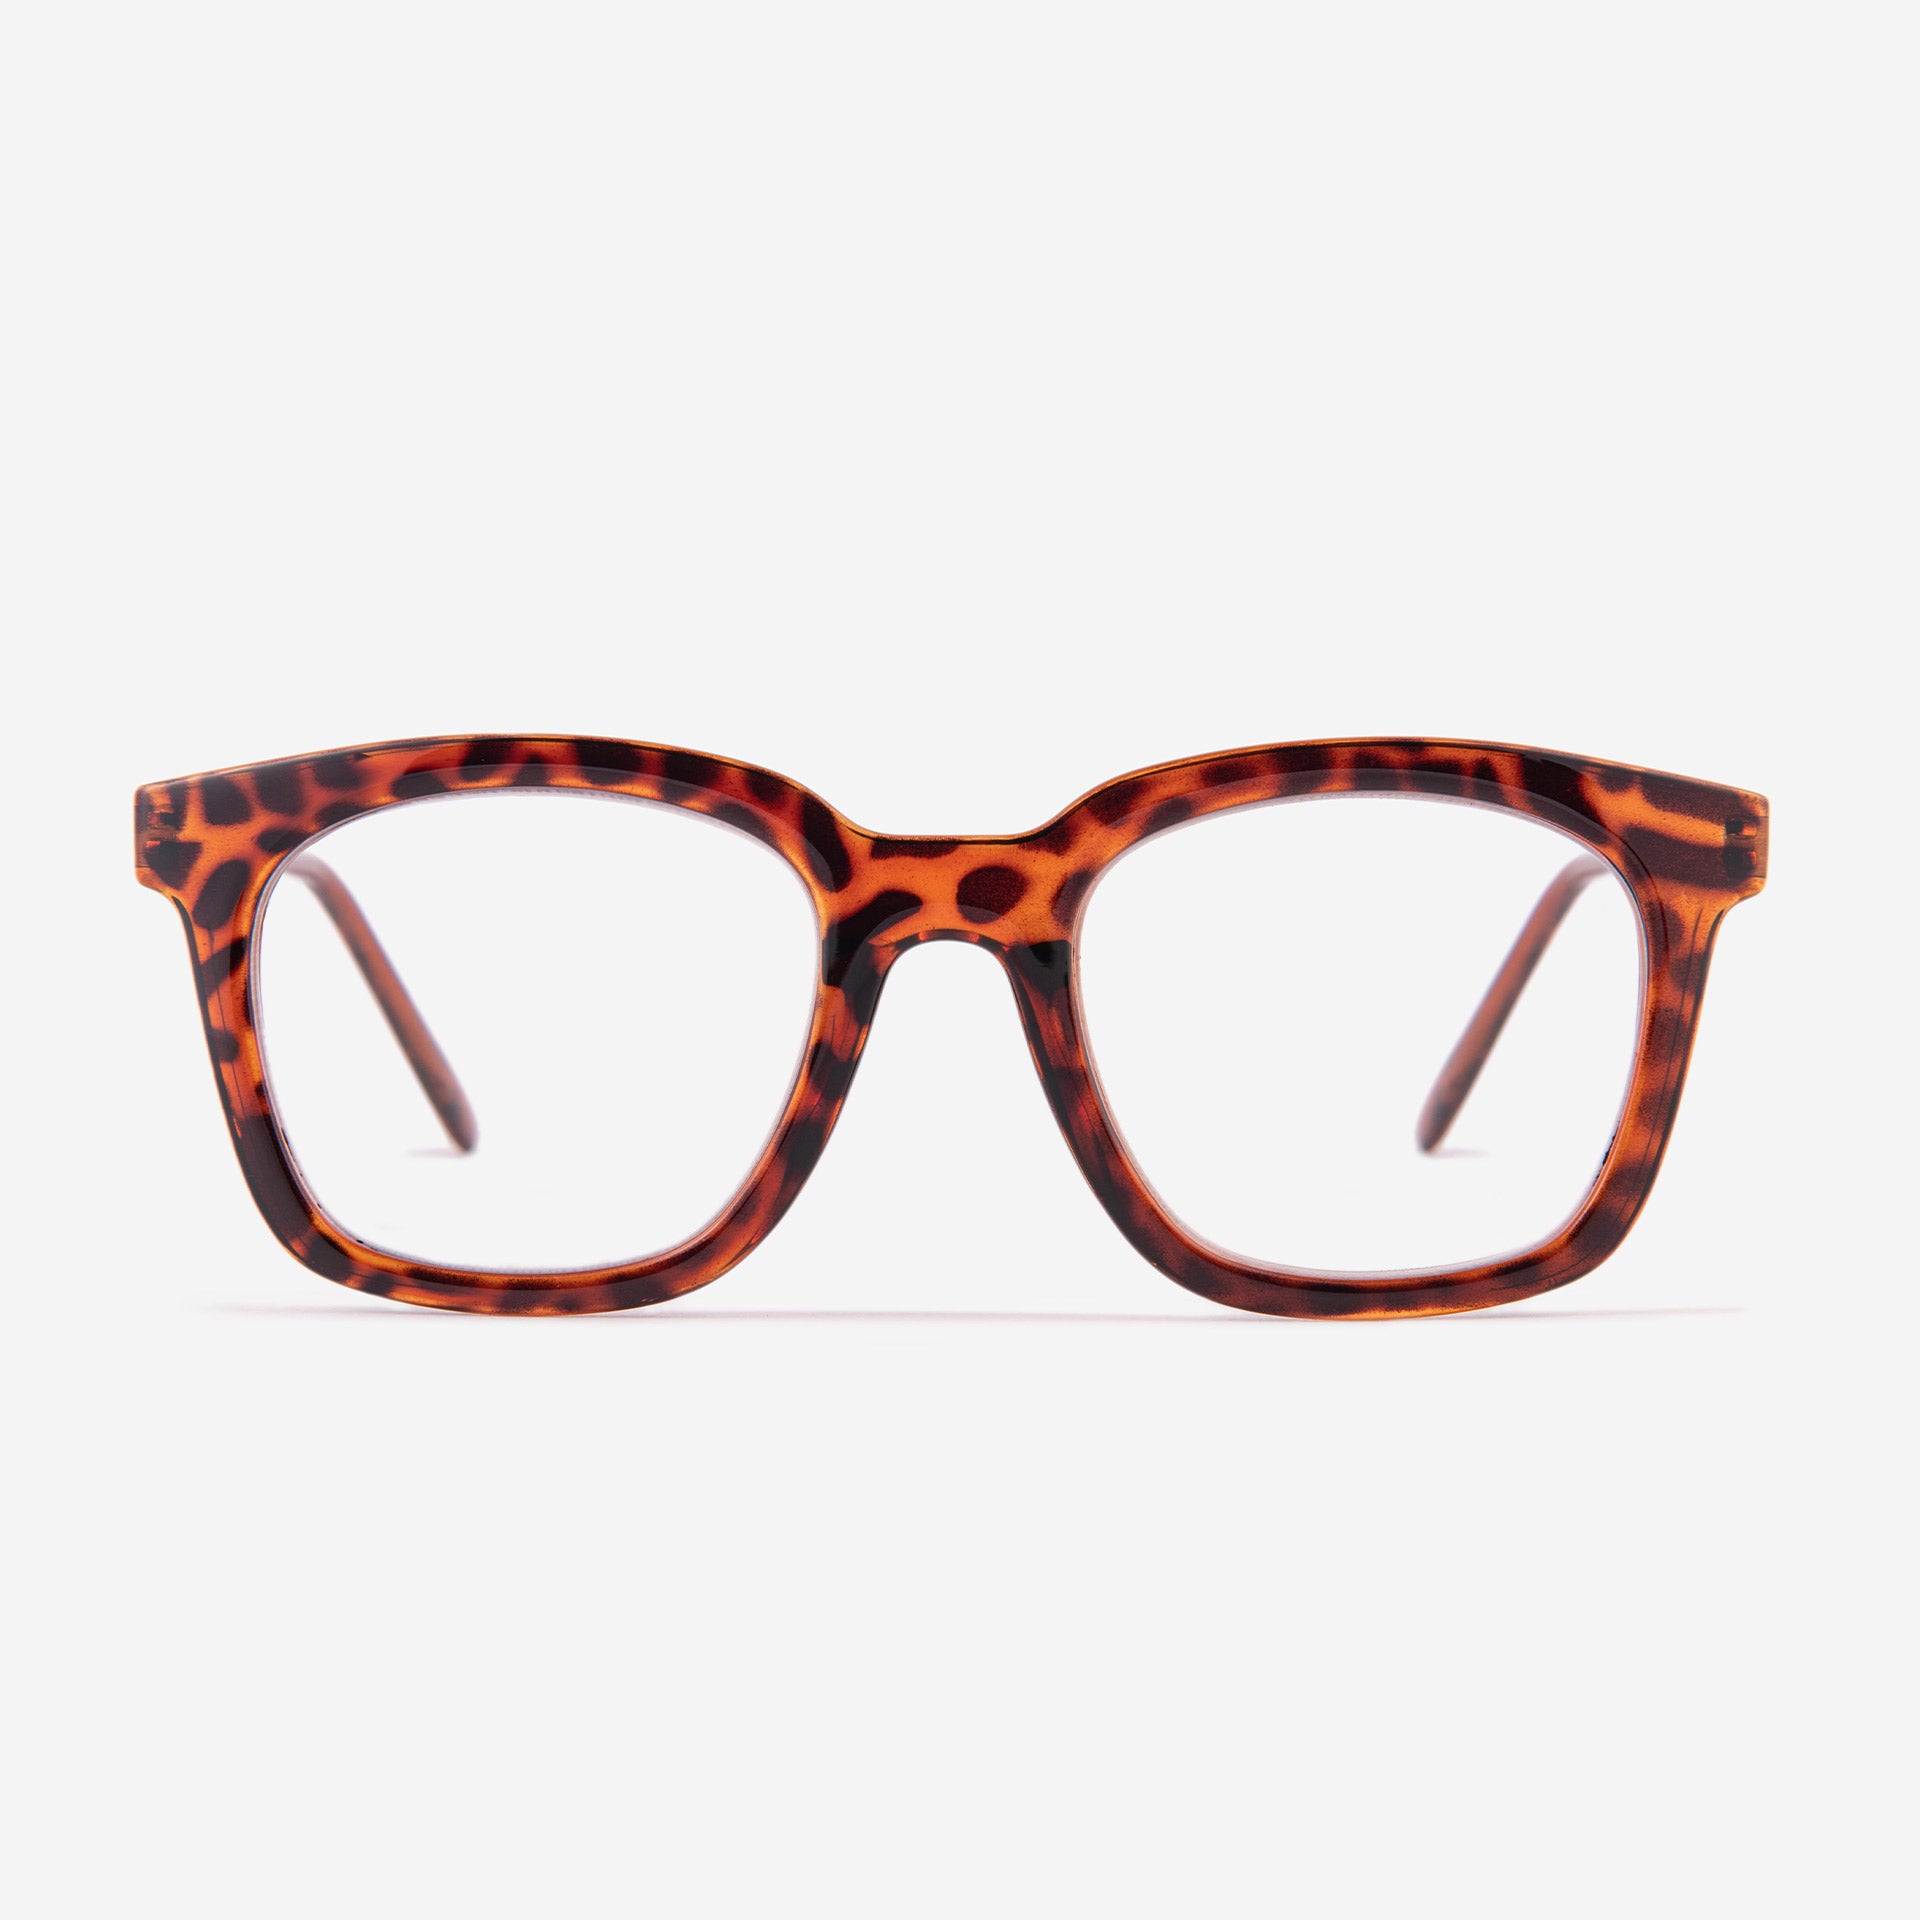 Lunettes de lecture carré - motif léopard orange et noir